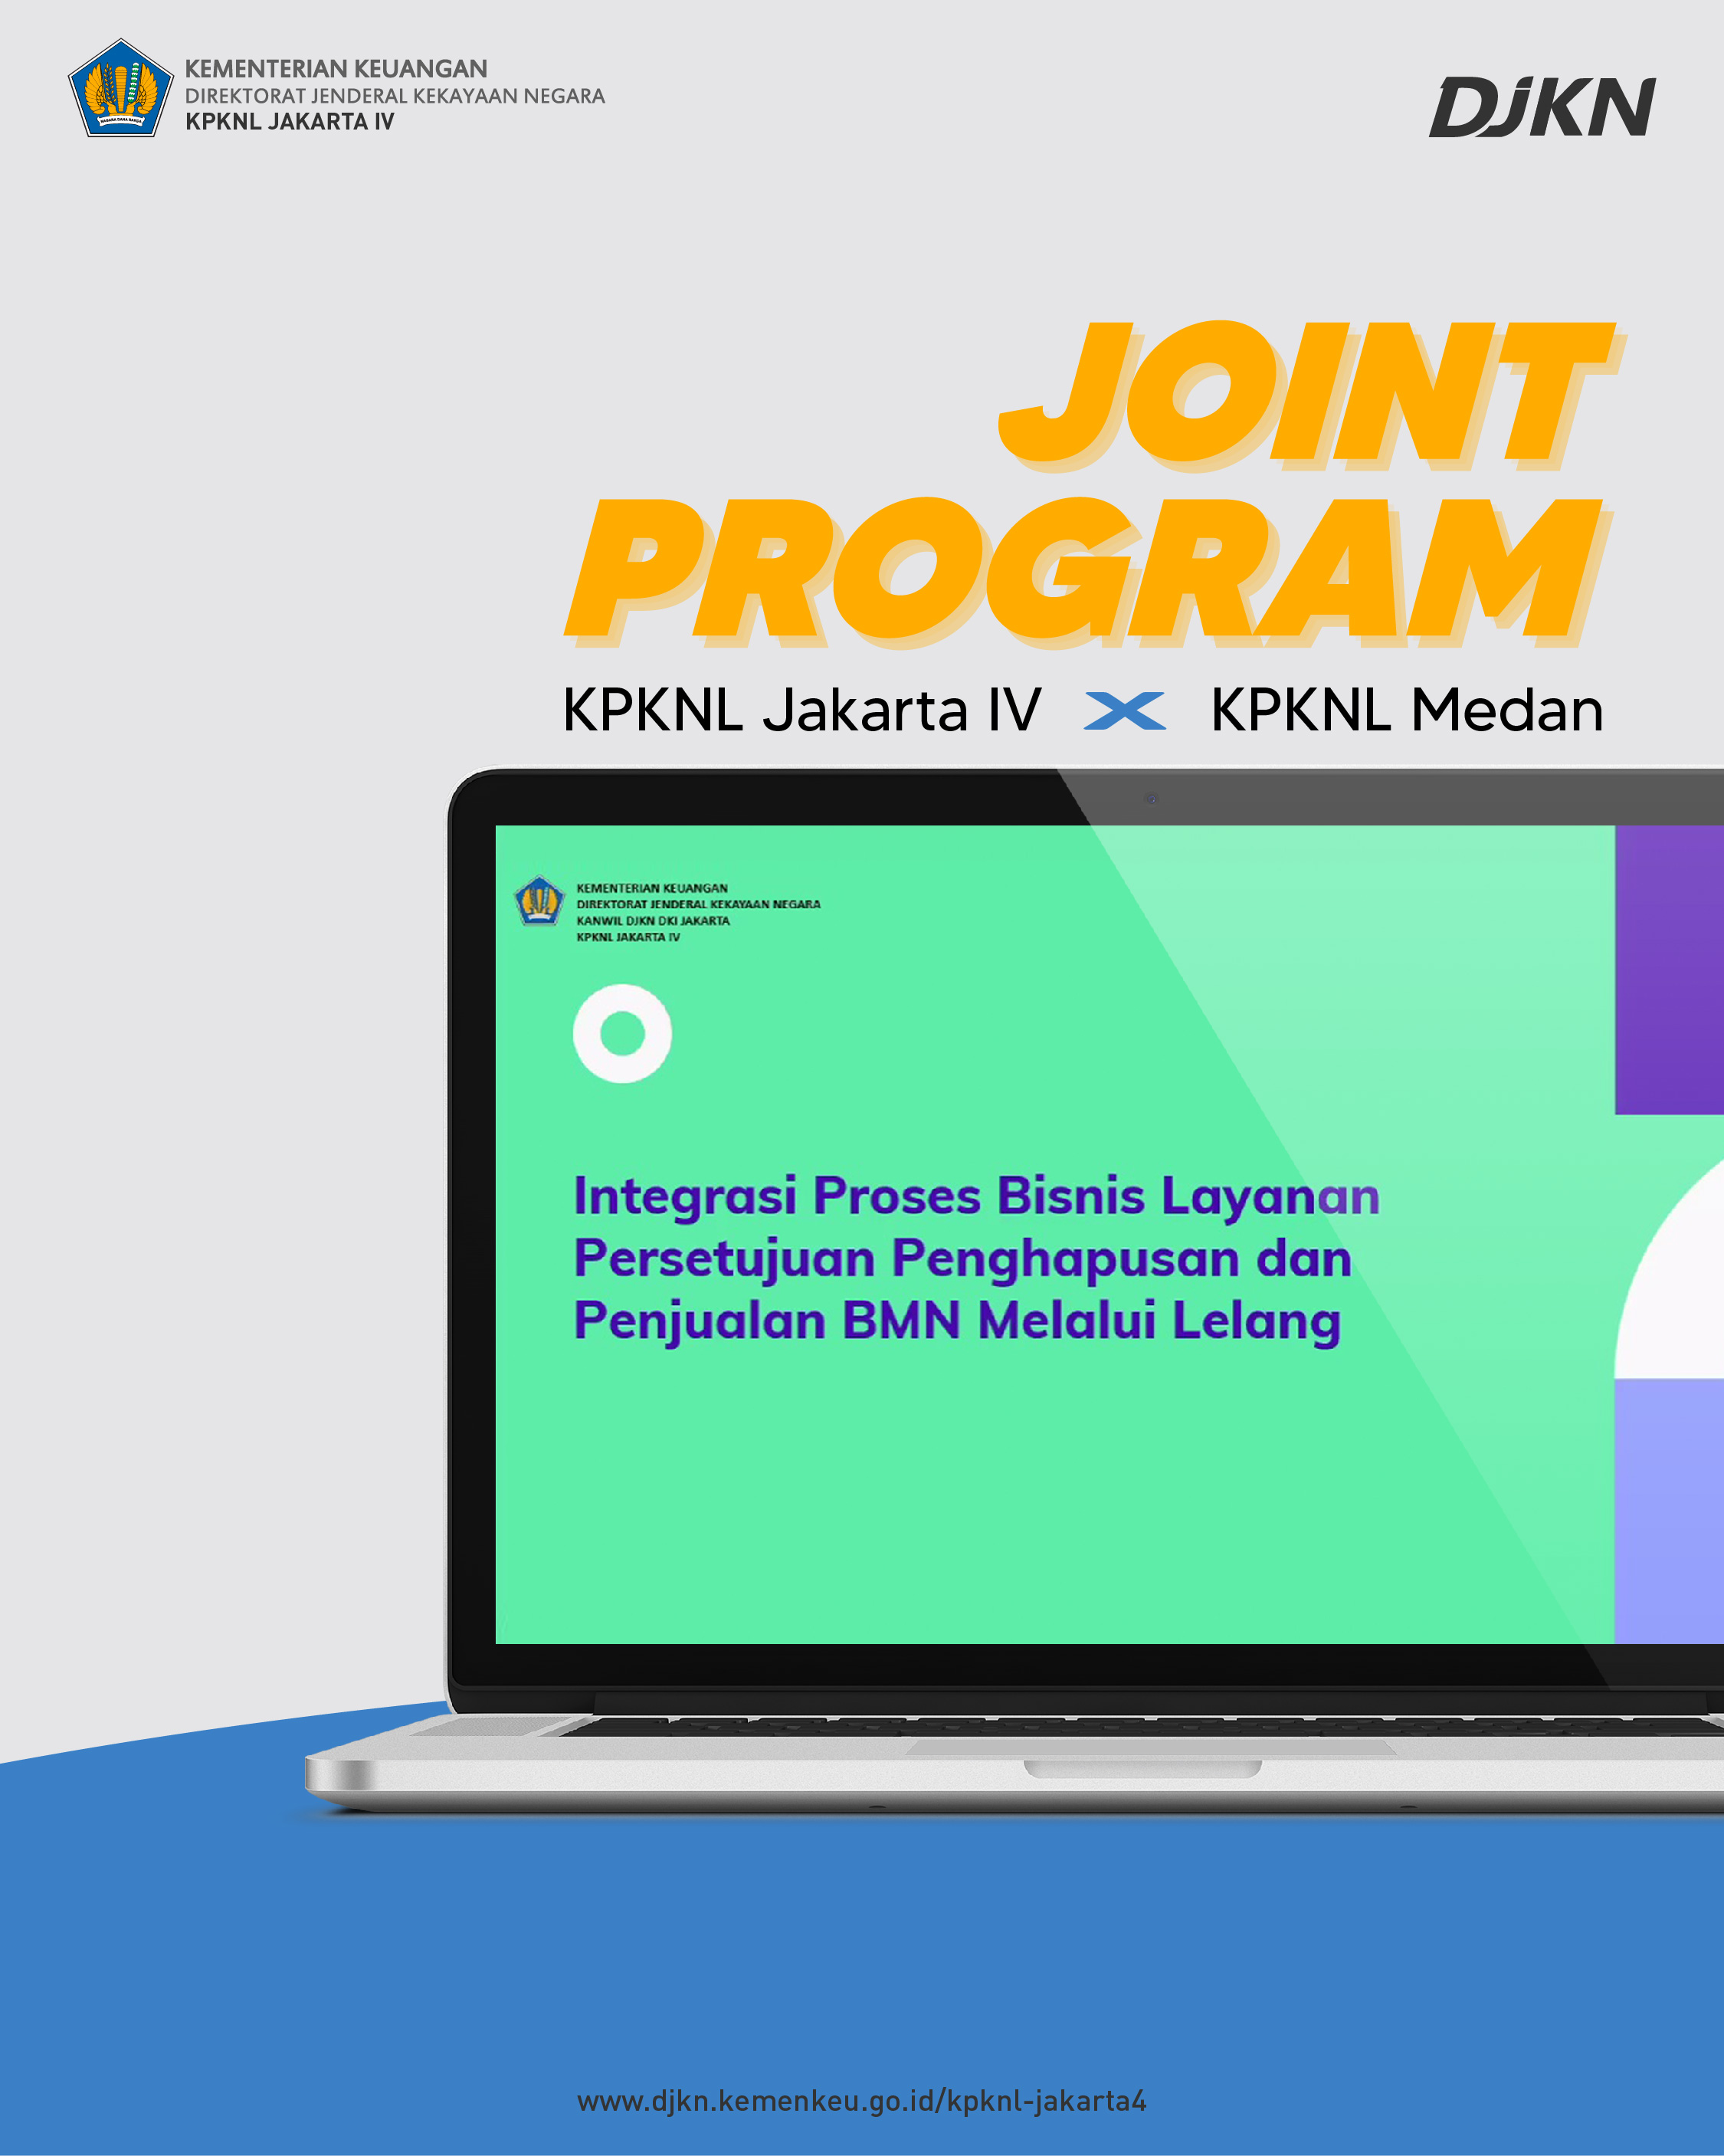 Joint Program KPKNL Jakarta IV dan KPKNL Medan, Integrasi Proses Layanan Bisnis Persetujuan Penghapusan dan Penjualan BMN melalui Lelang 